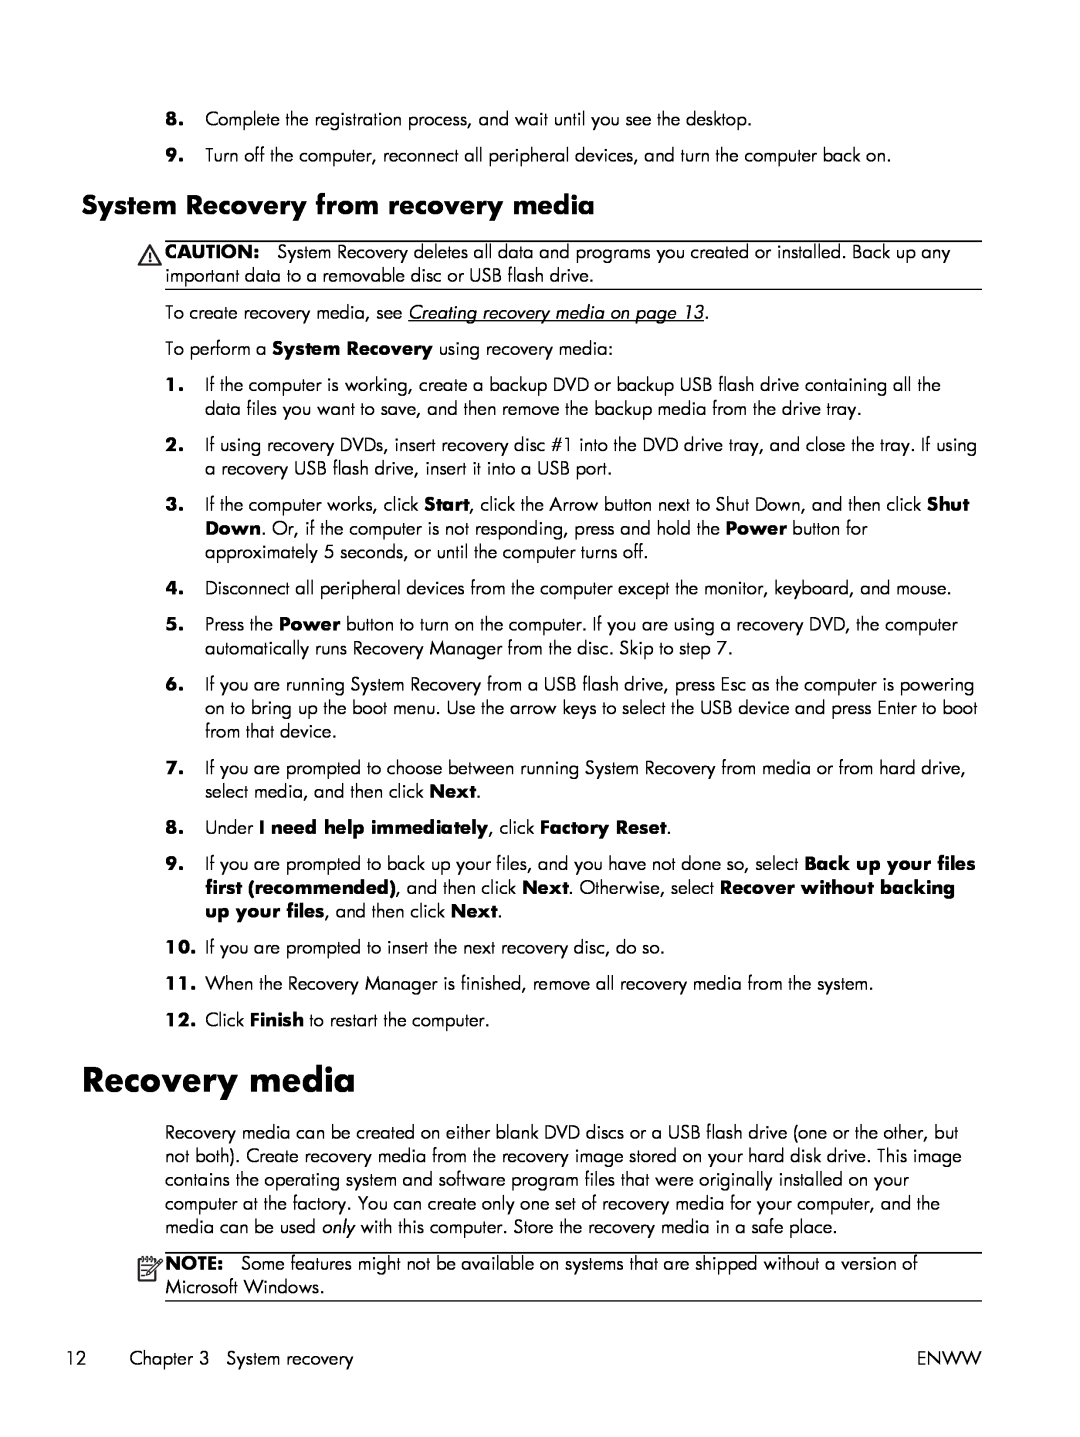 HP p2-1411, 23-c210xt, 23-c159, 23-c130, 23-c115xt, 23-c059, 23-c050 manual Recovery media, System Recovery from recovery media 